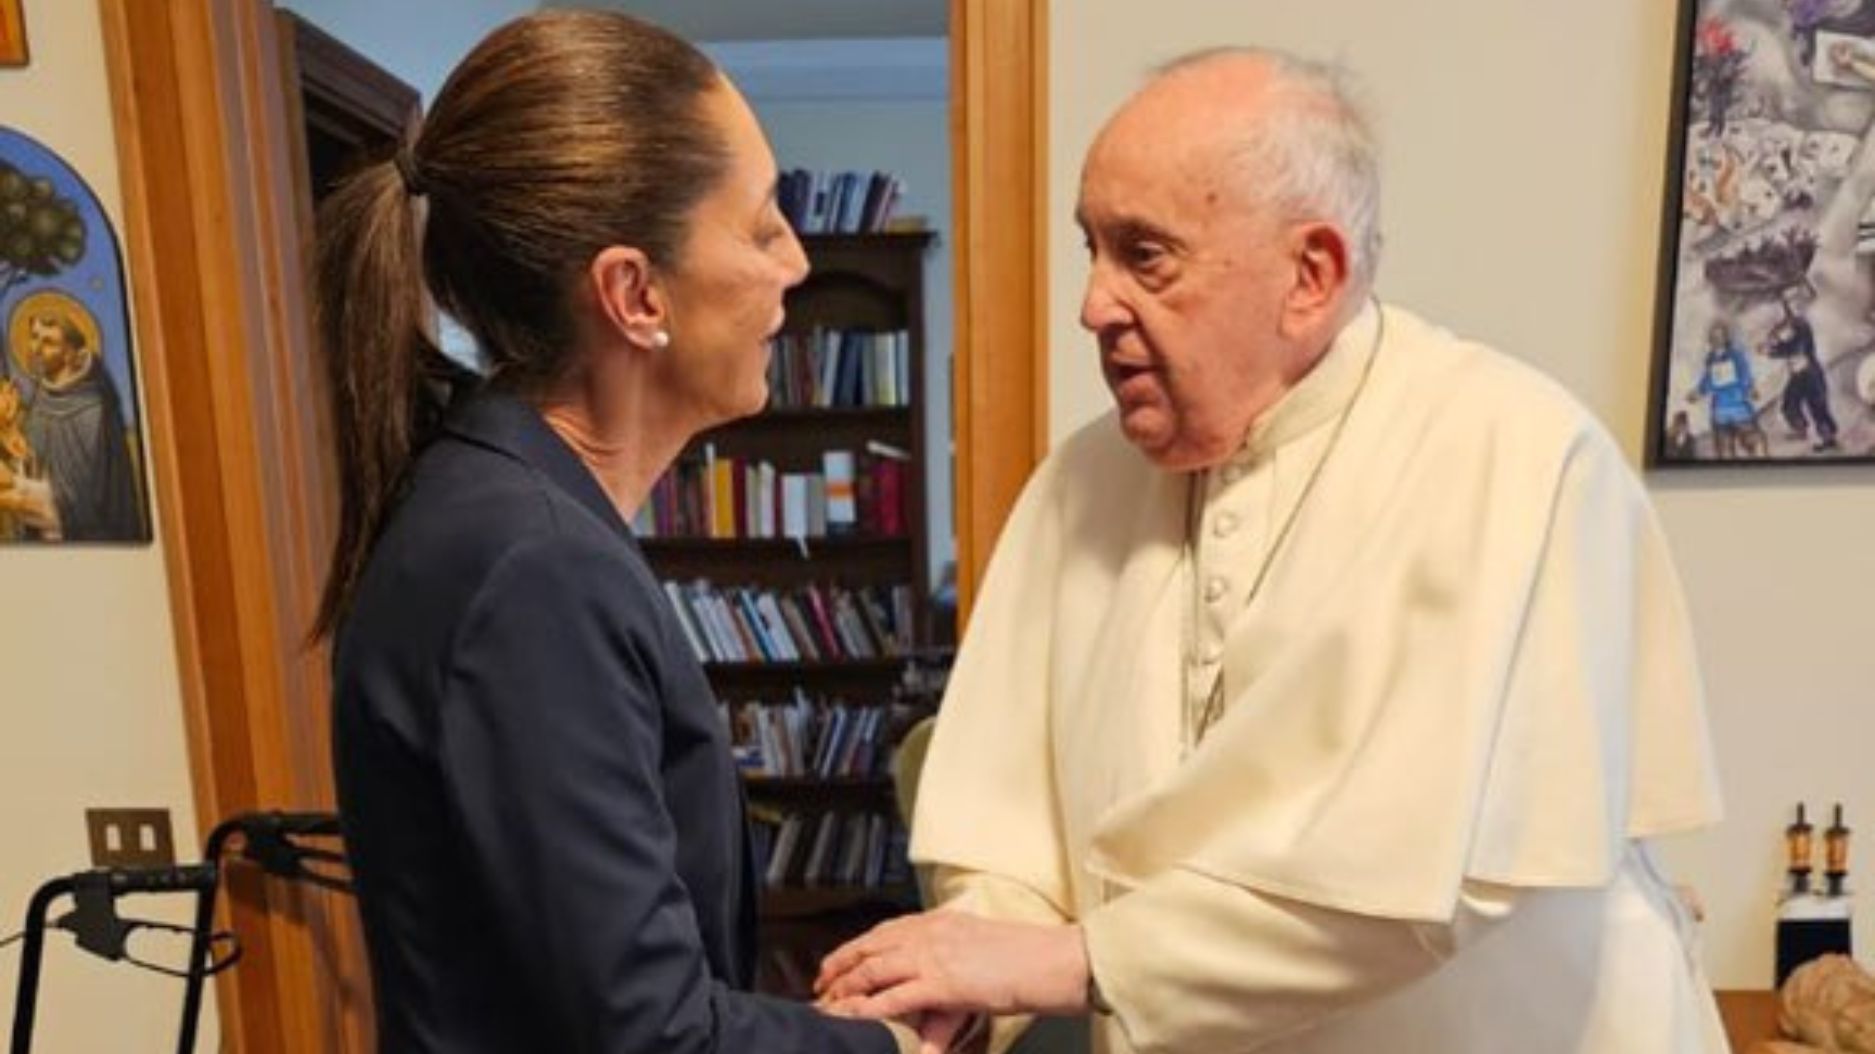 xóchitl gálvez y claudia sheinbaum, candidatas presidenciales de méxico, se reúnen en privado con el papa francisco